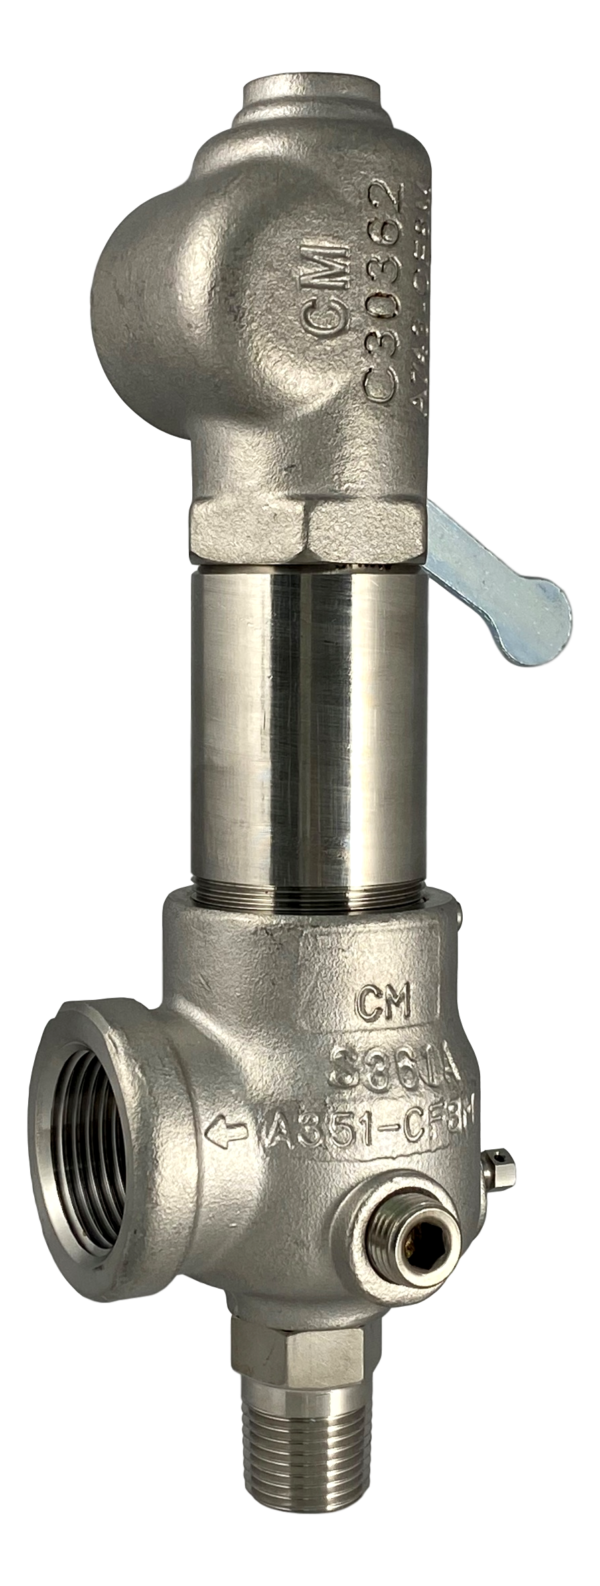 Kunkle 911BJHM06 - 2" x 3" - Packed Lever - Buy Kunkle valves online